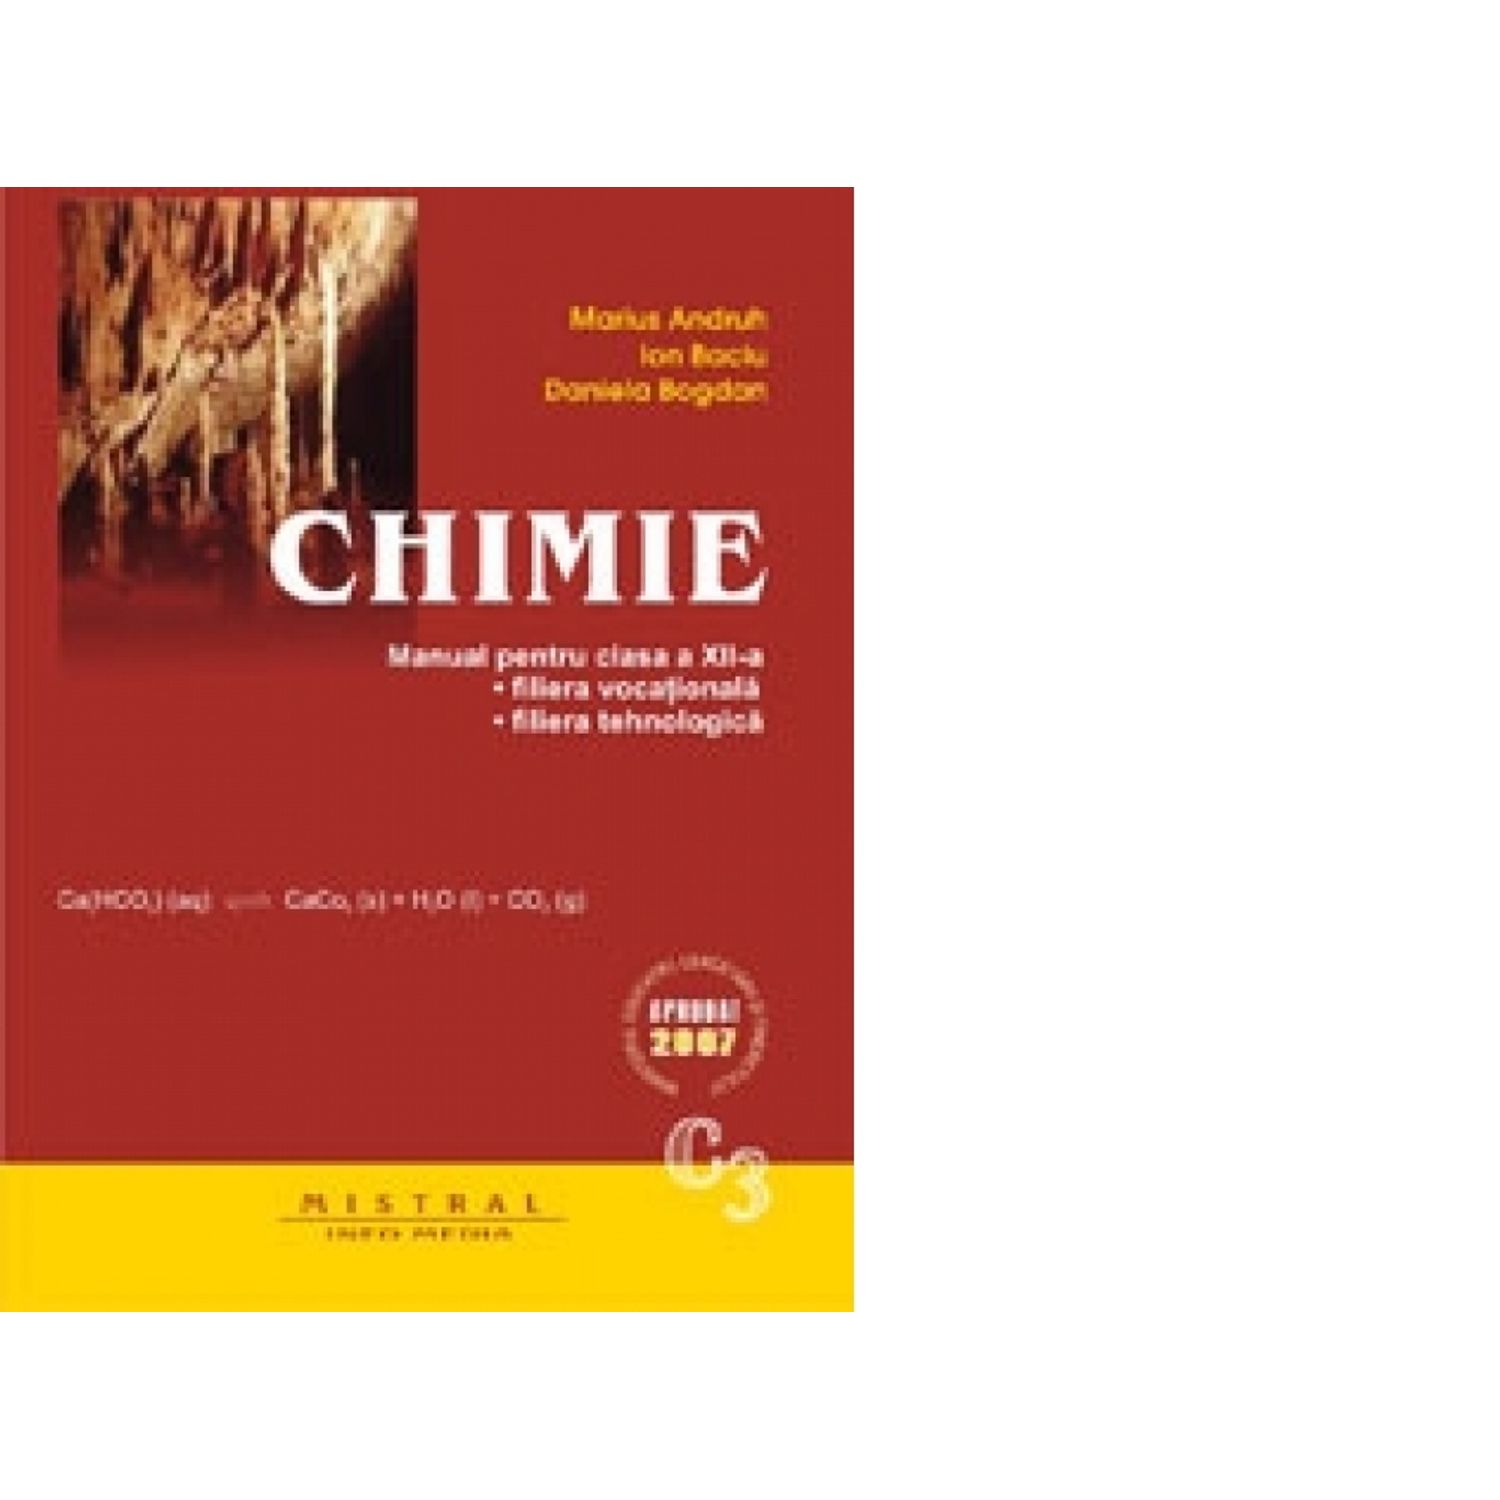 CHIMIE. Manual pentru clasa a XII-a, C3. Filiera vocationala, filiera tehnologica